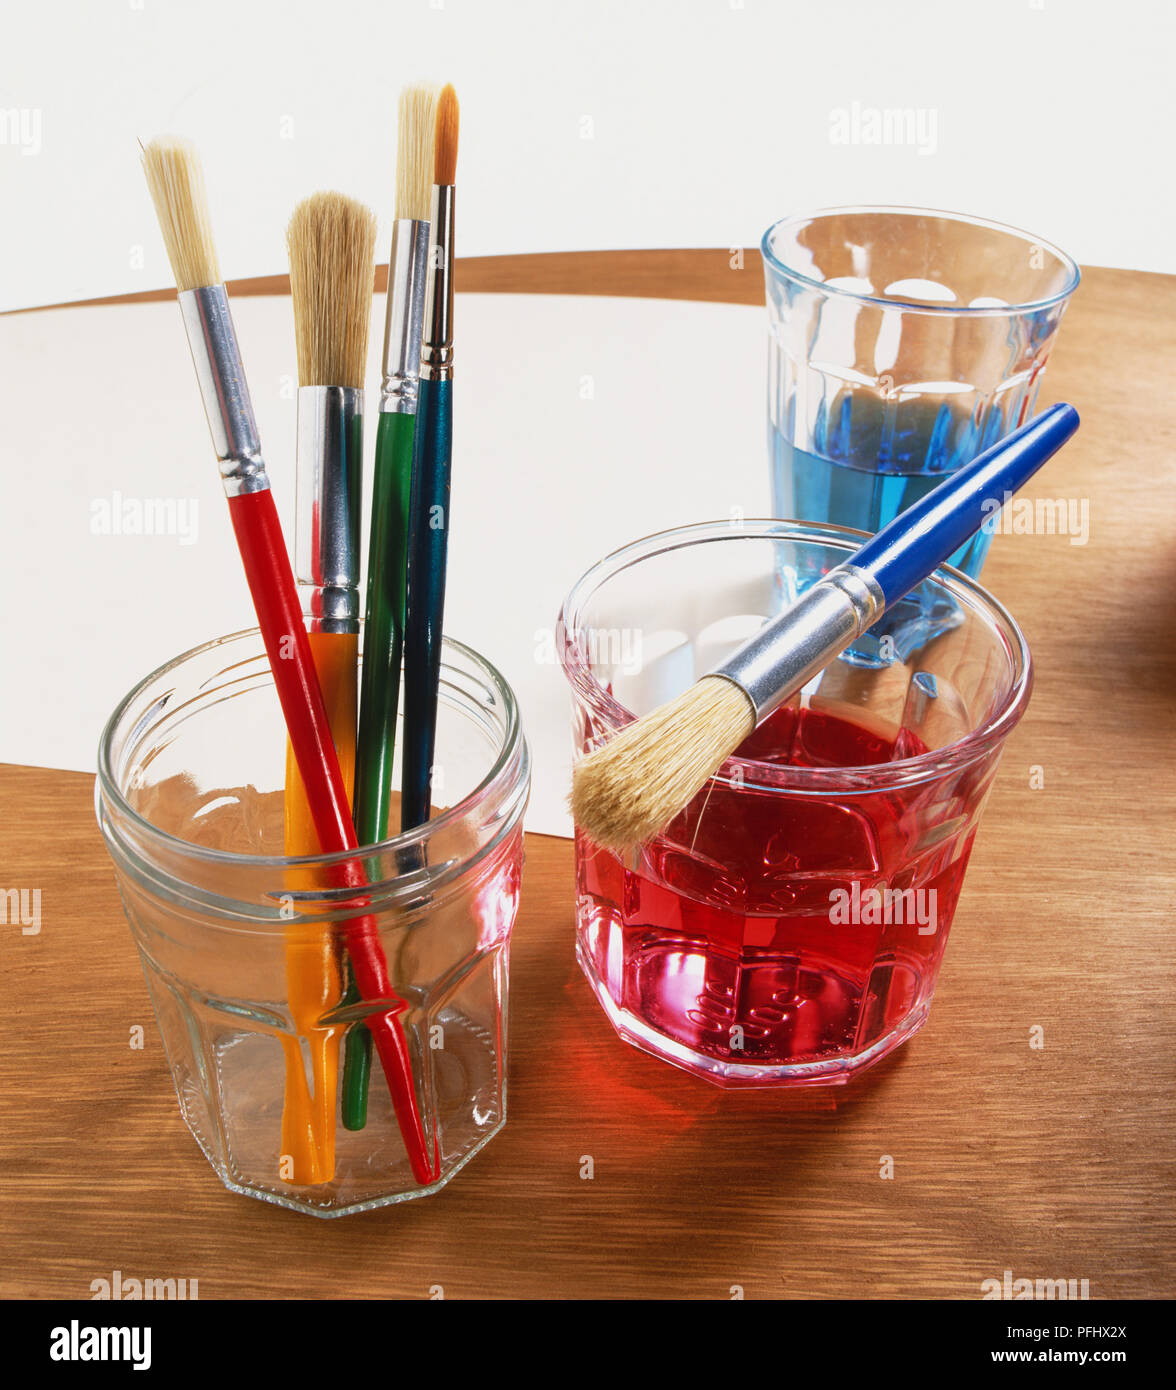 Un juego de pinceles multicolores para pintar en un vaso.